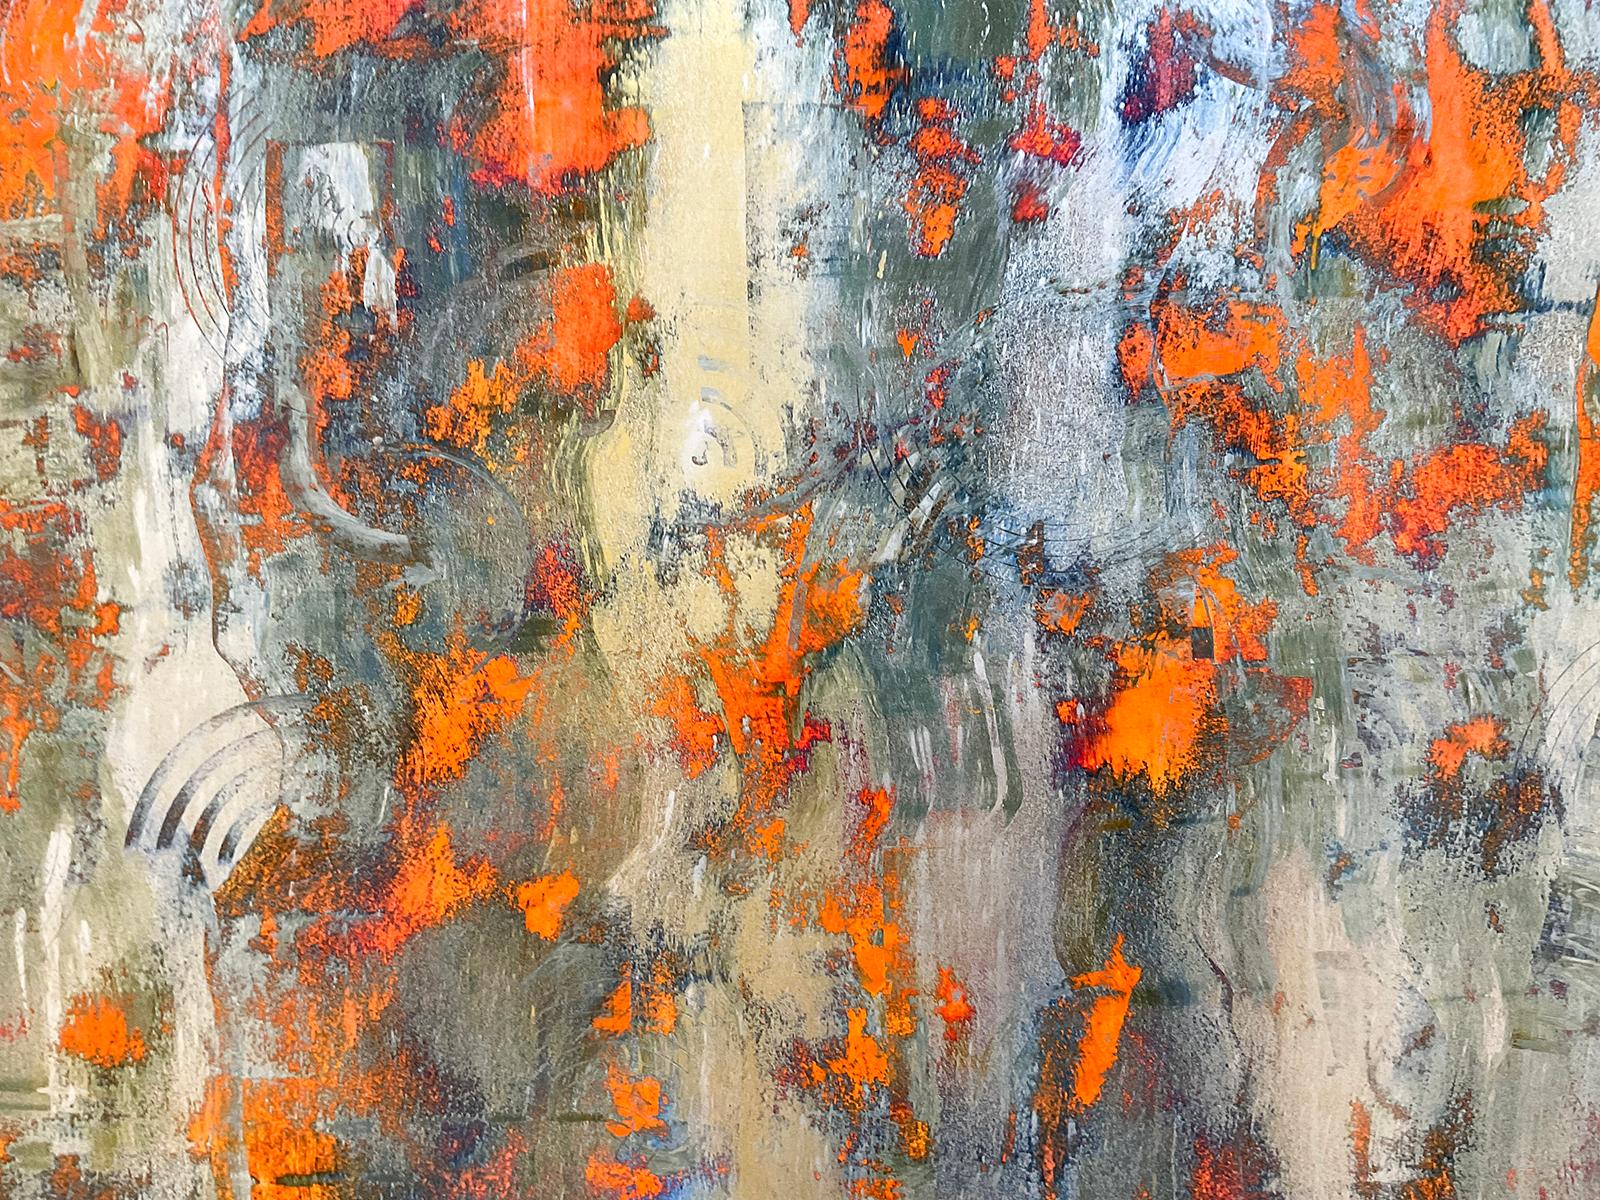 Peinture abstraite gestuelle sur papier avec des poudres métalliques dorées et de la peinture émaillée de couleur orange et argent
